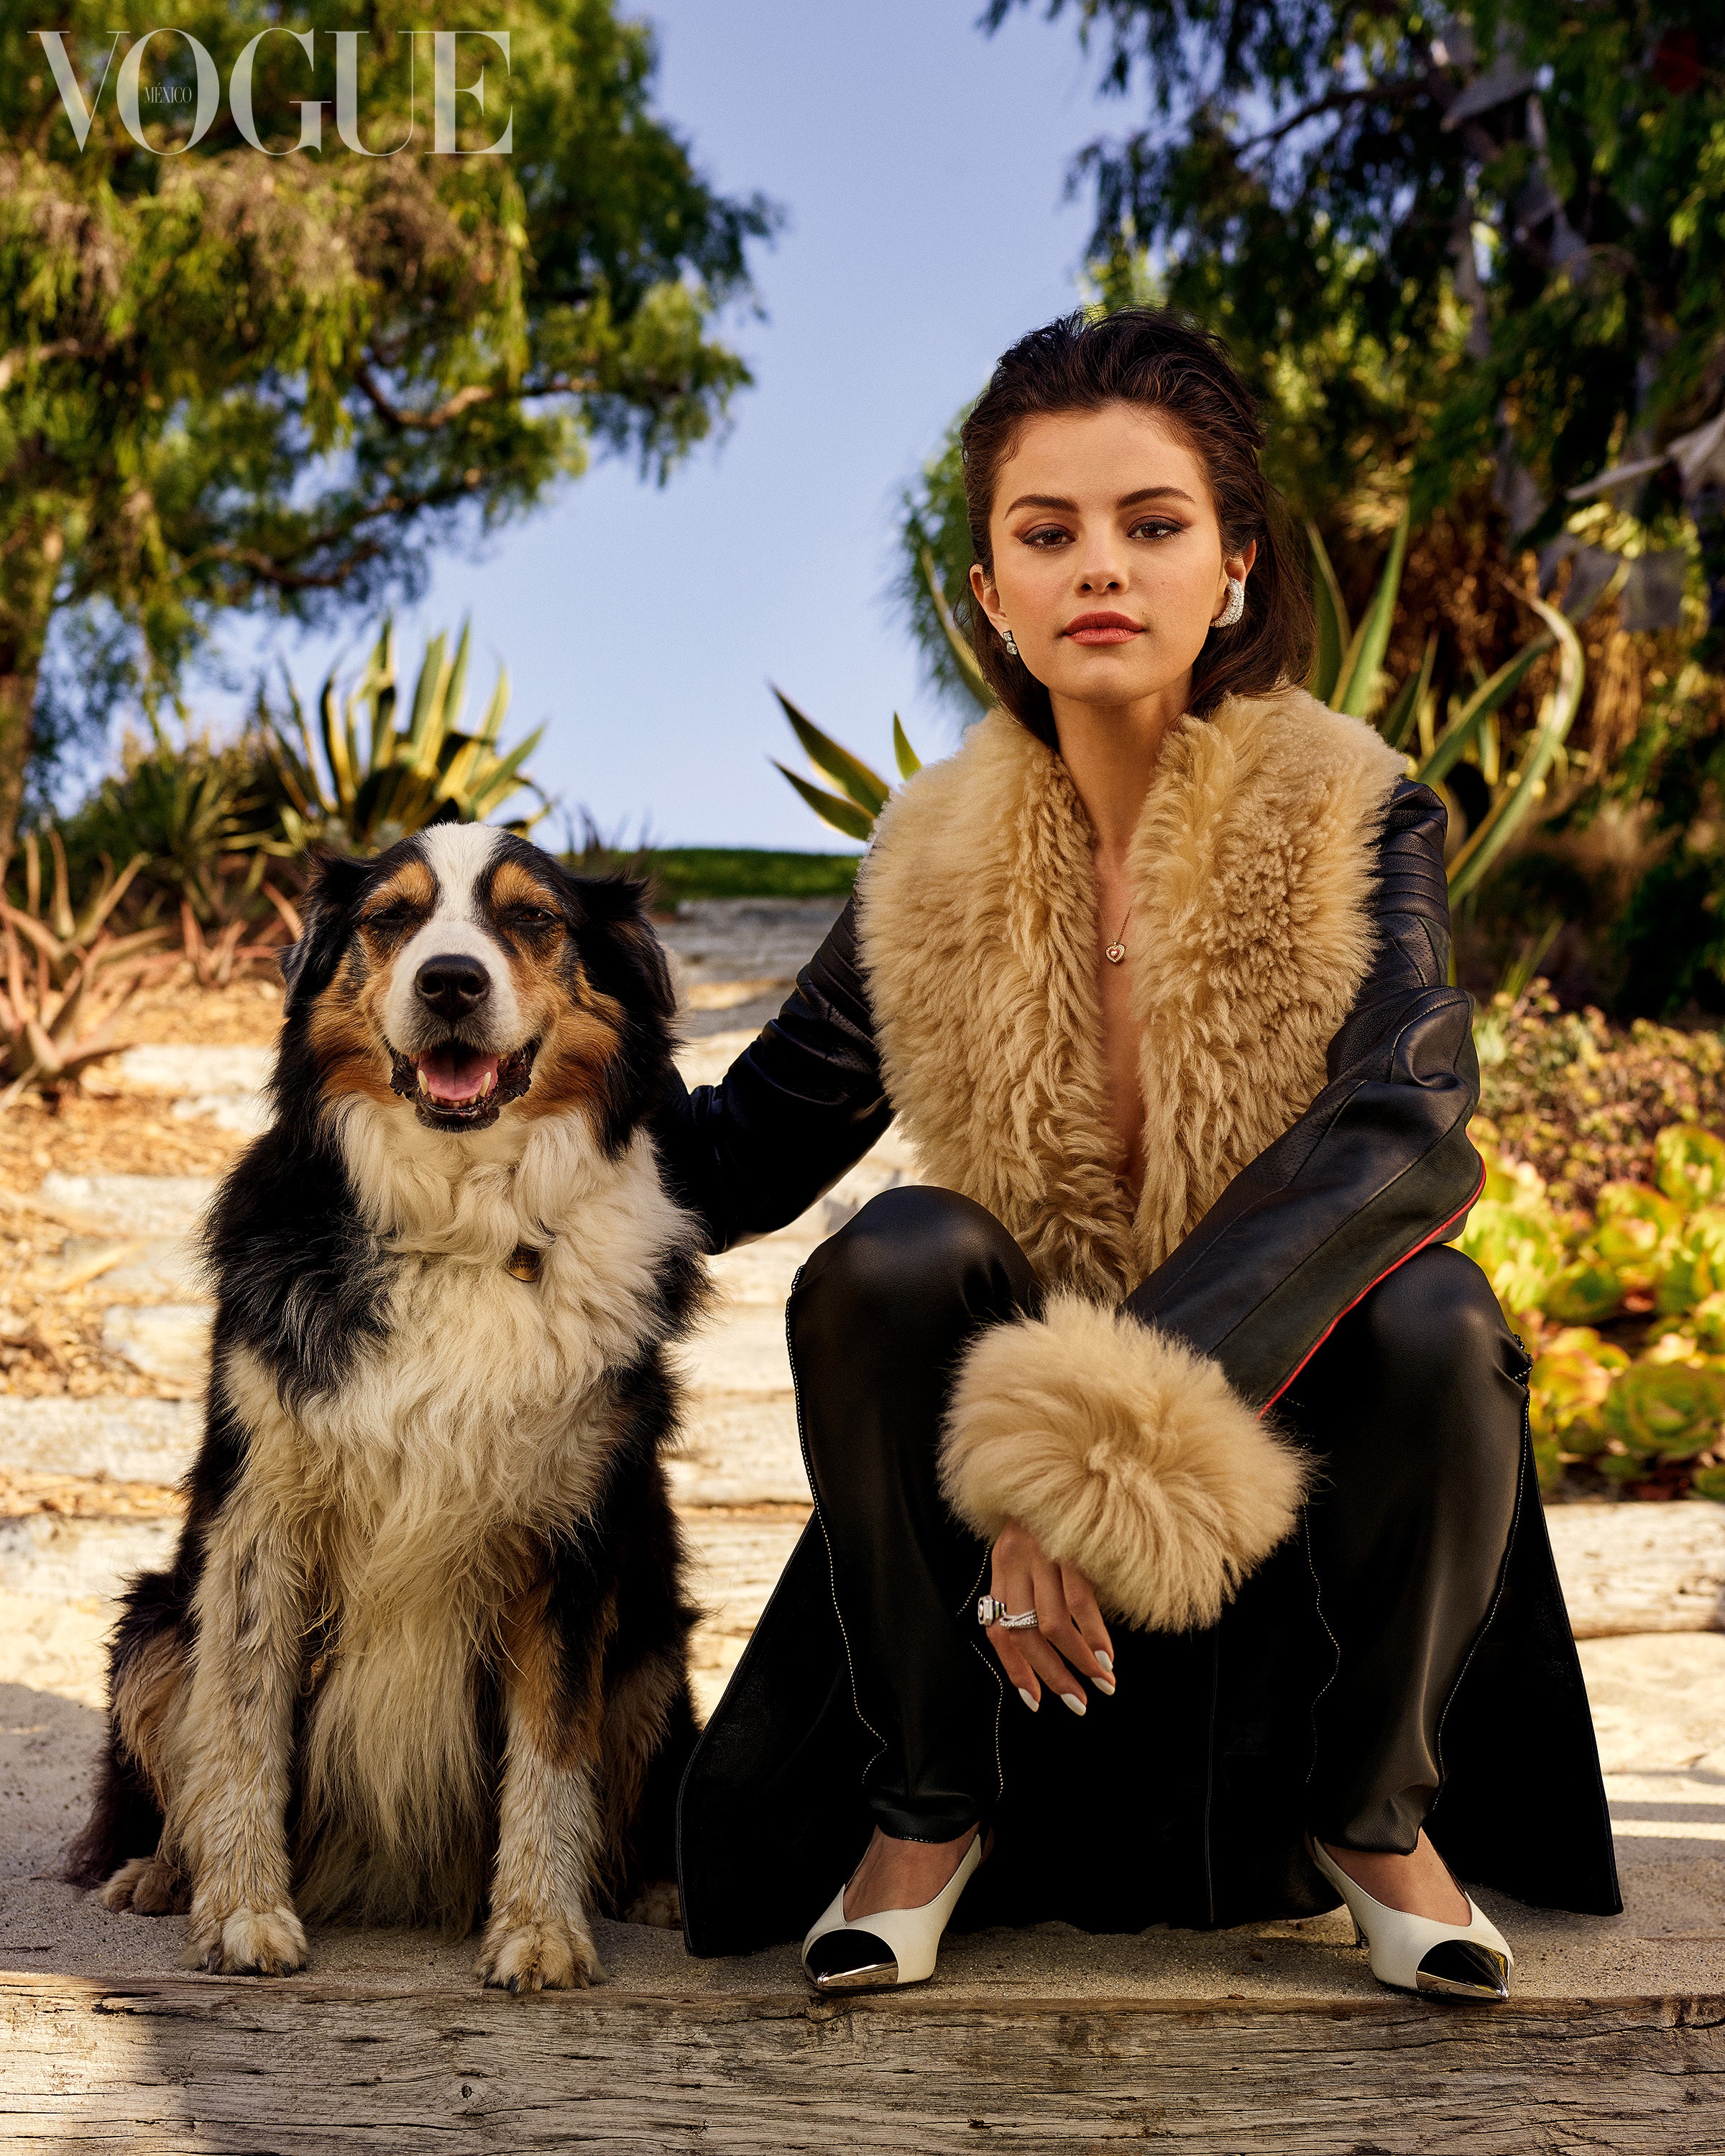 Photo n°1 : Selena Gomez au Mexique avec un chien!